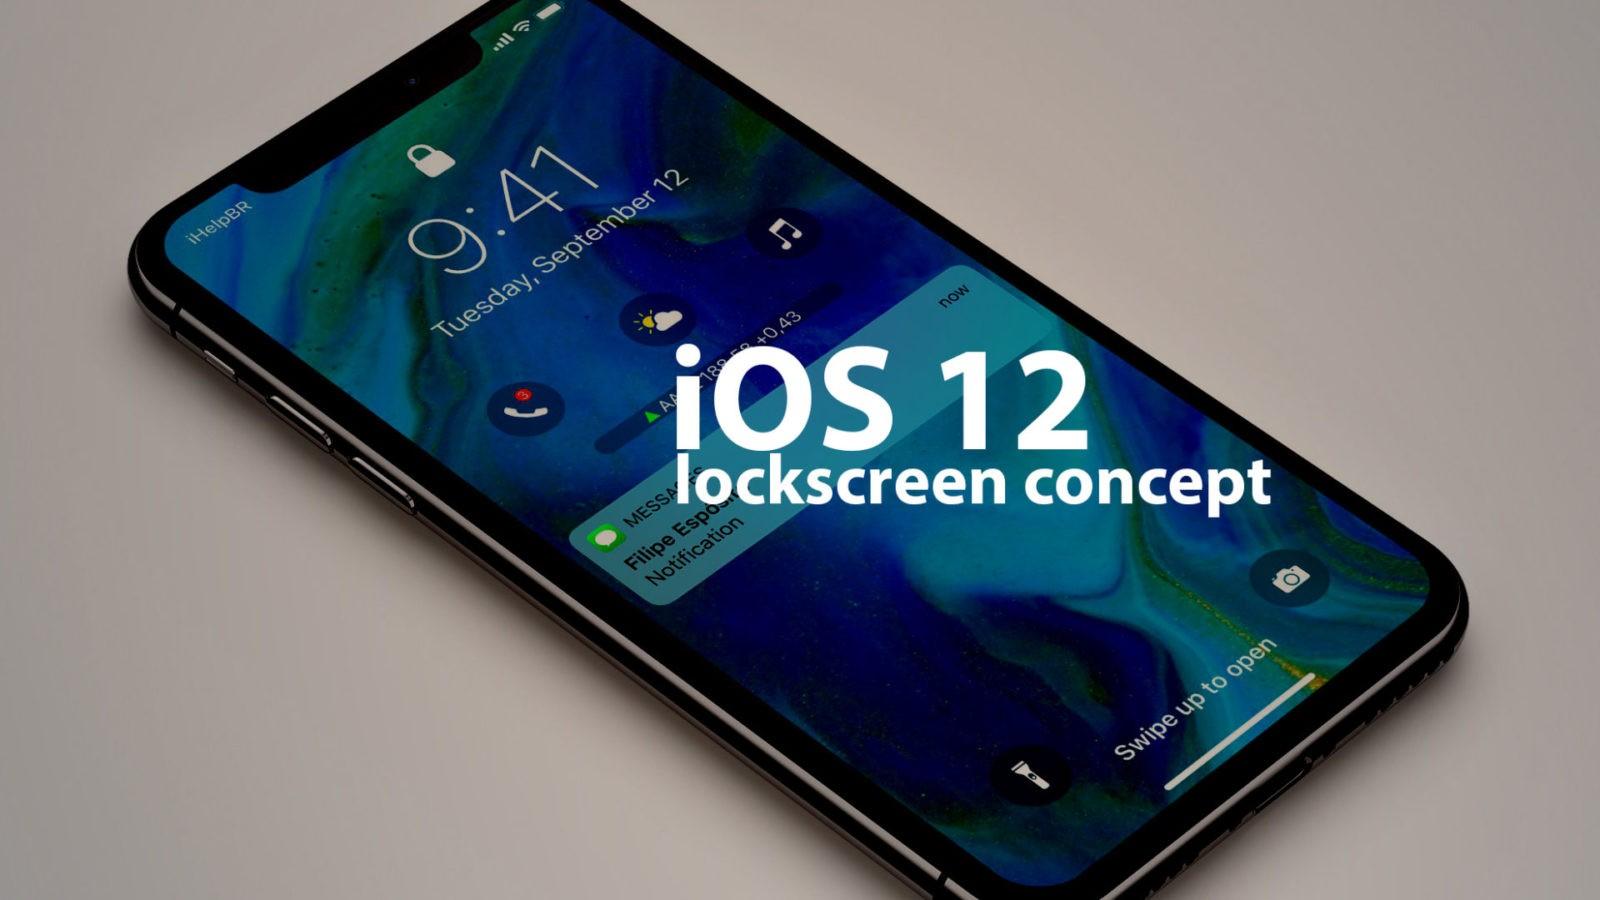 iOS 12 lockscreen concept